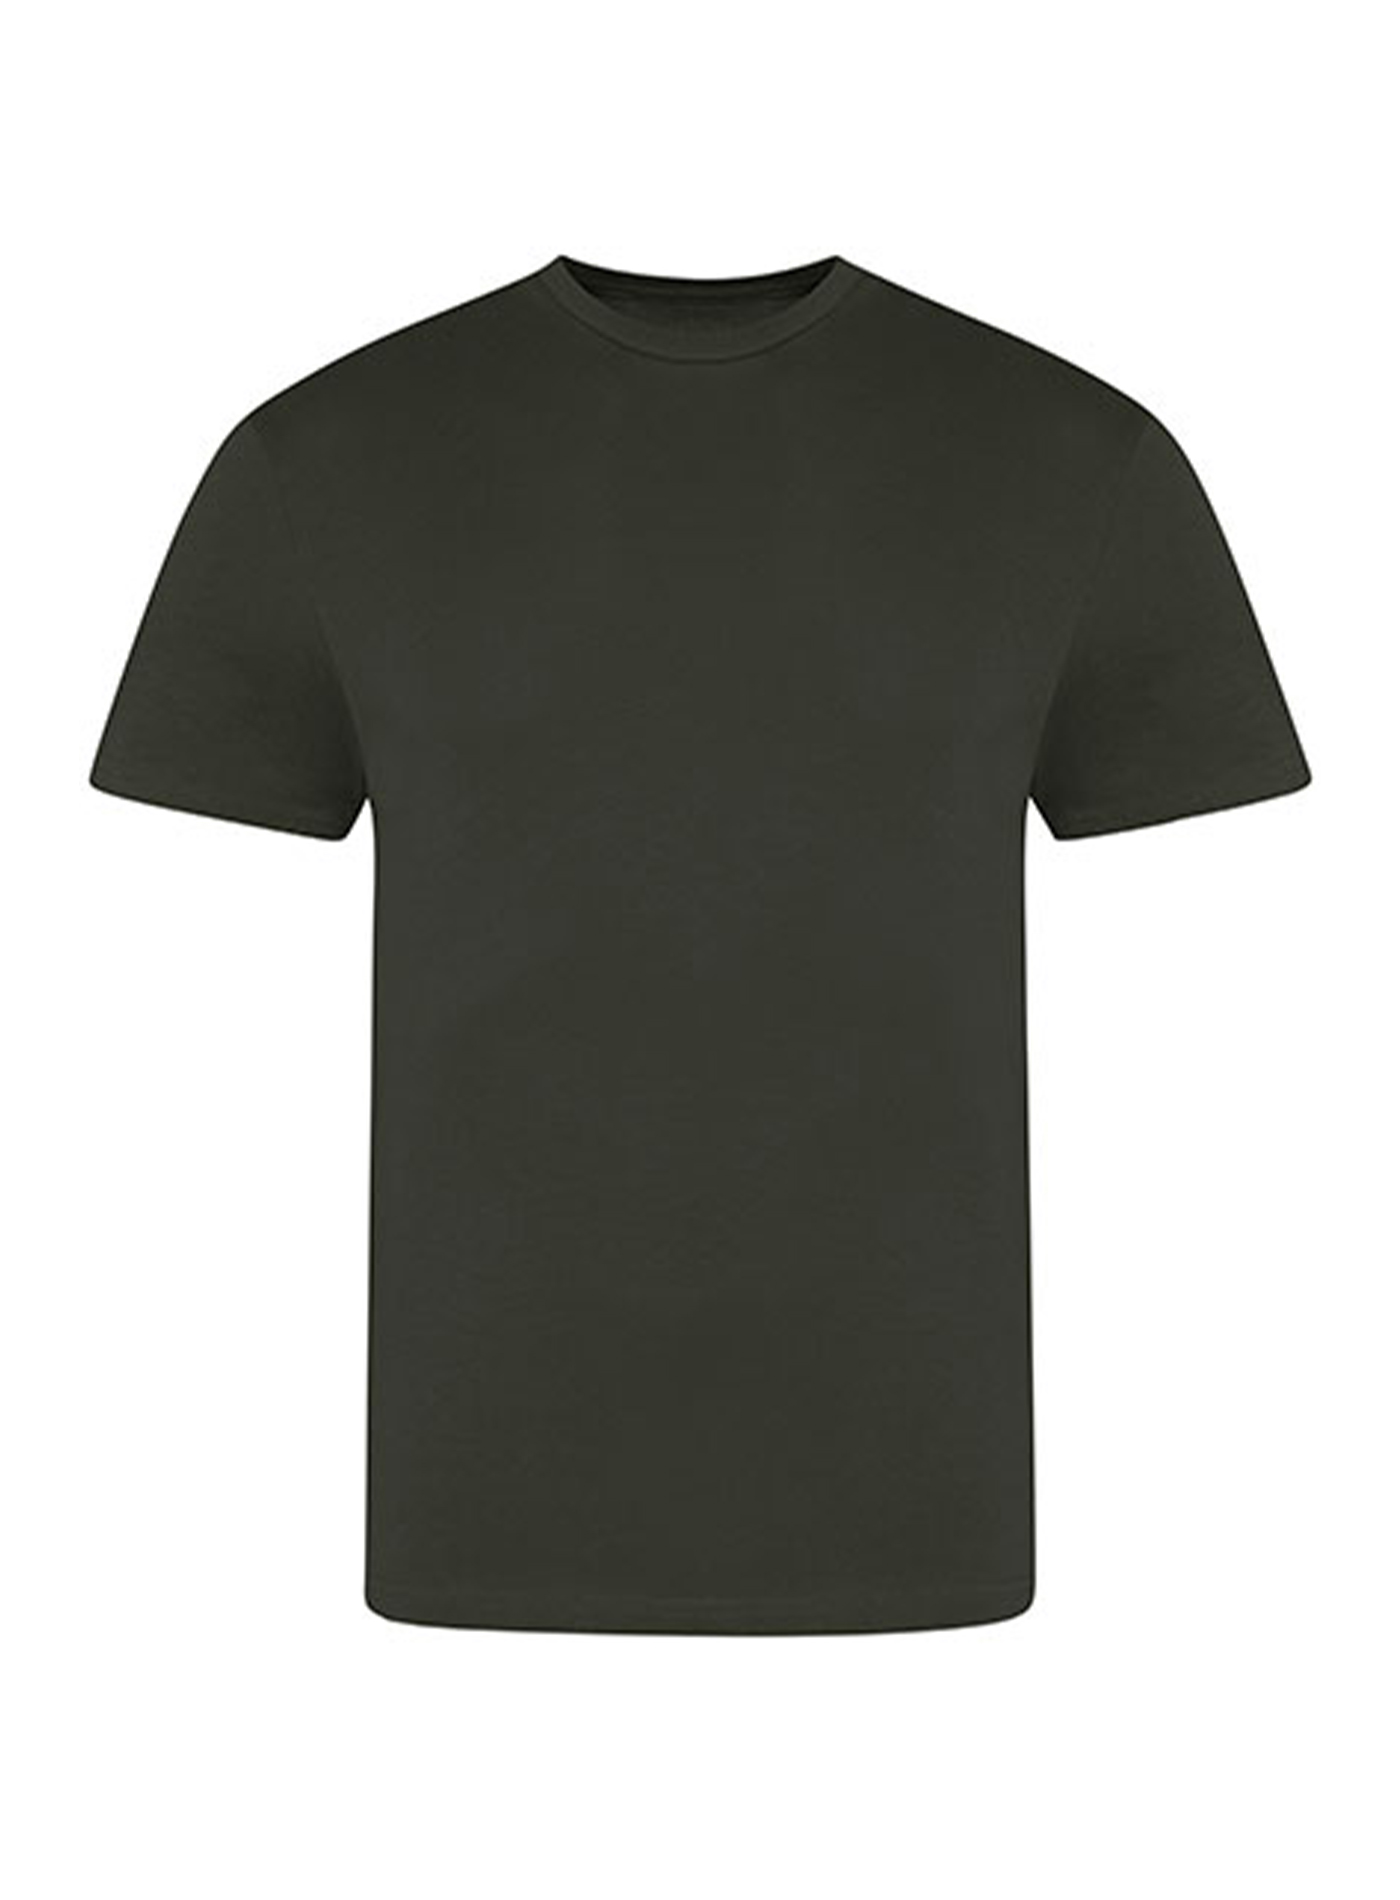 Pánské tričko Just Ts - Bojová zelená XXL